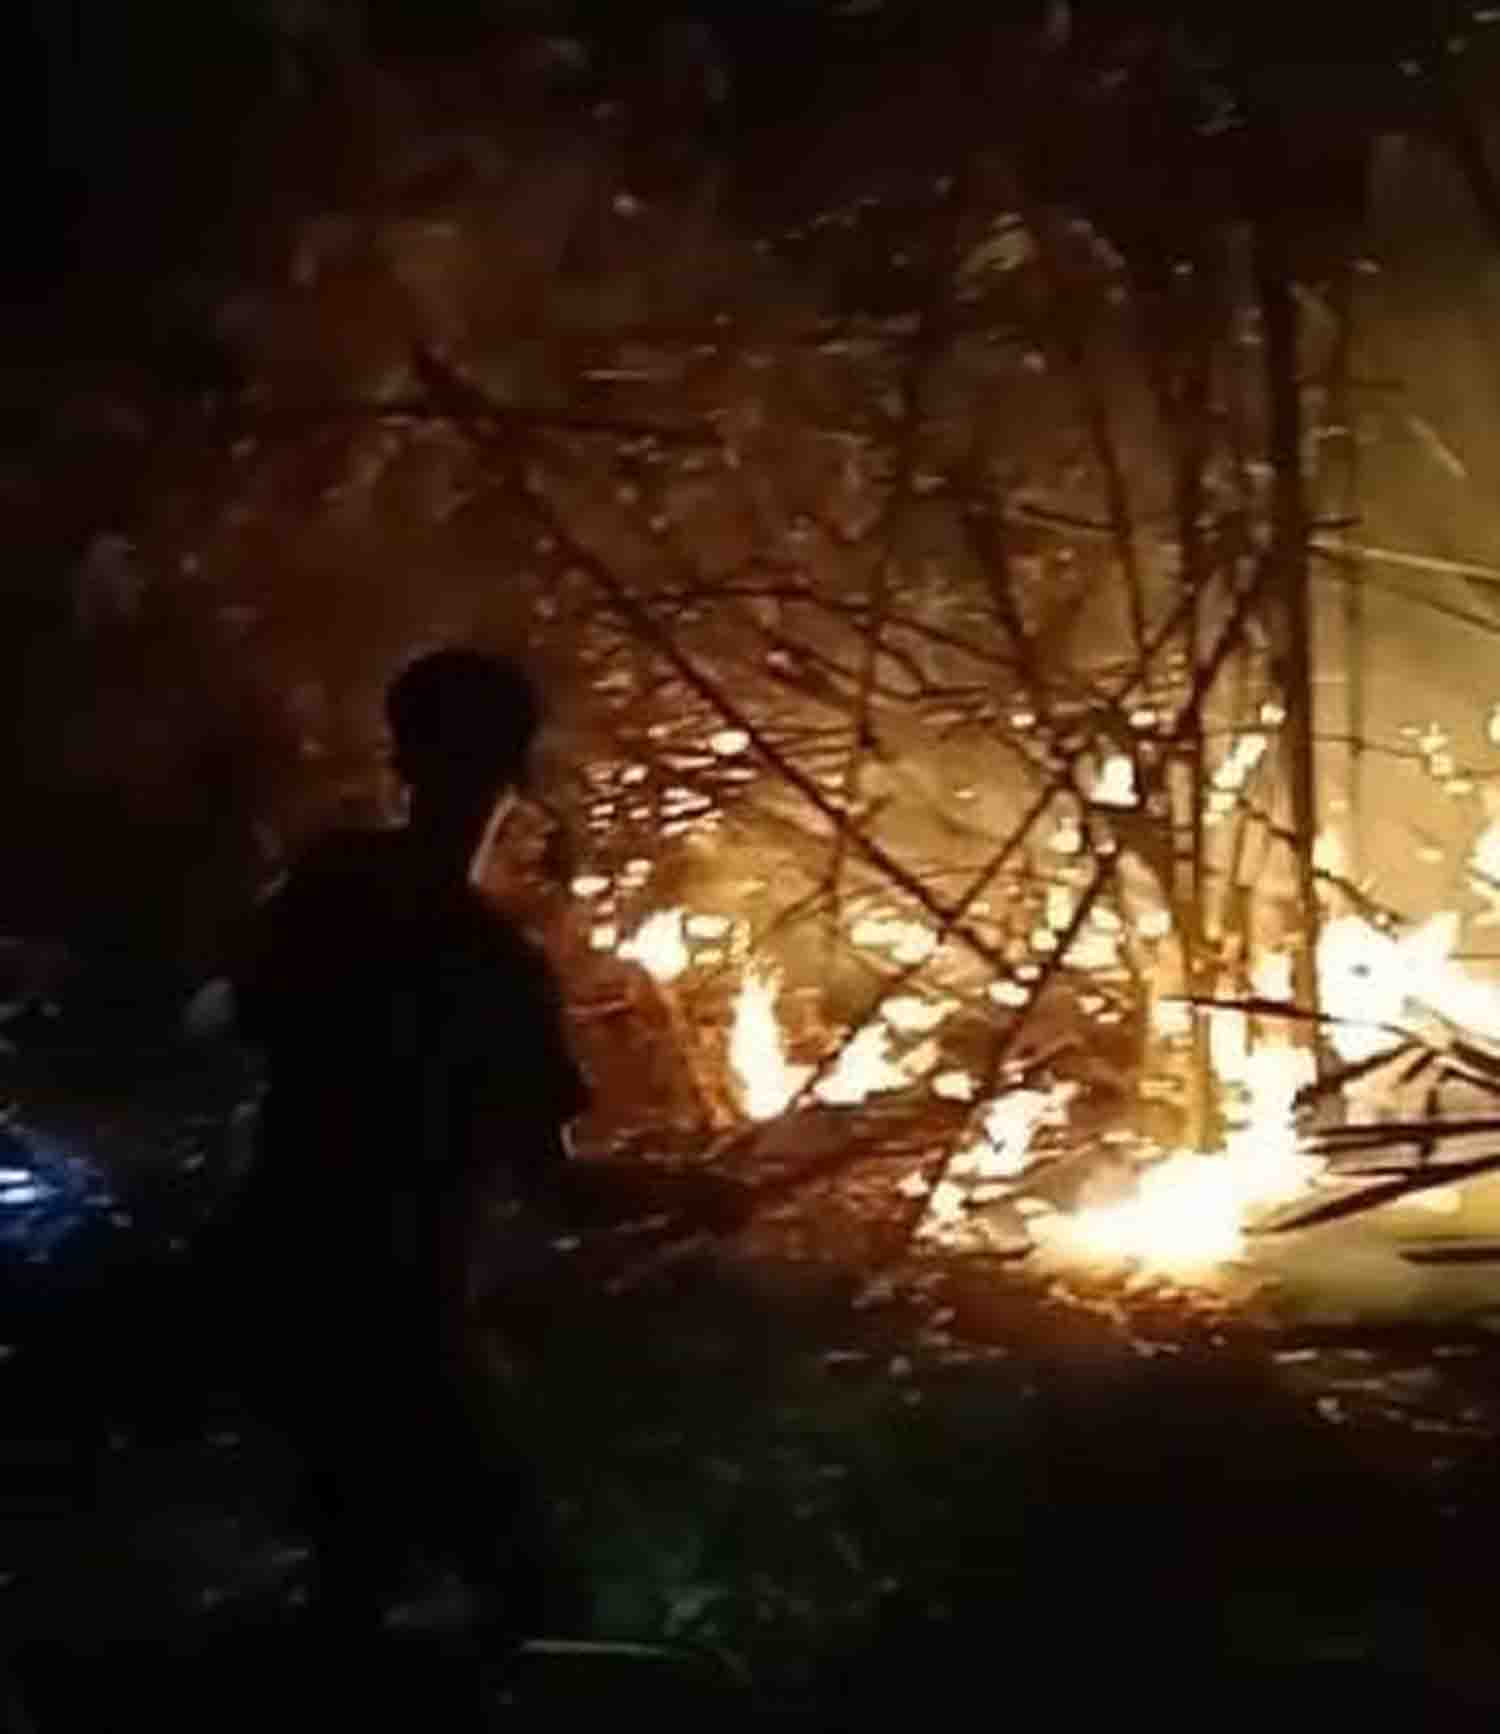 Karhutlah Lagi, Lahan Setengah Hektar di Kepahiang Habis Dilalap Api